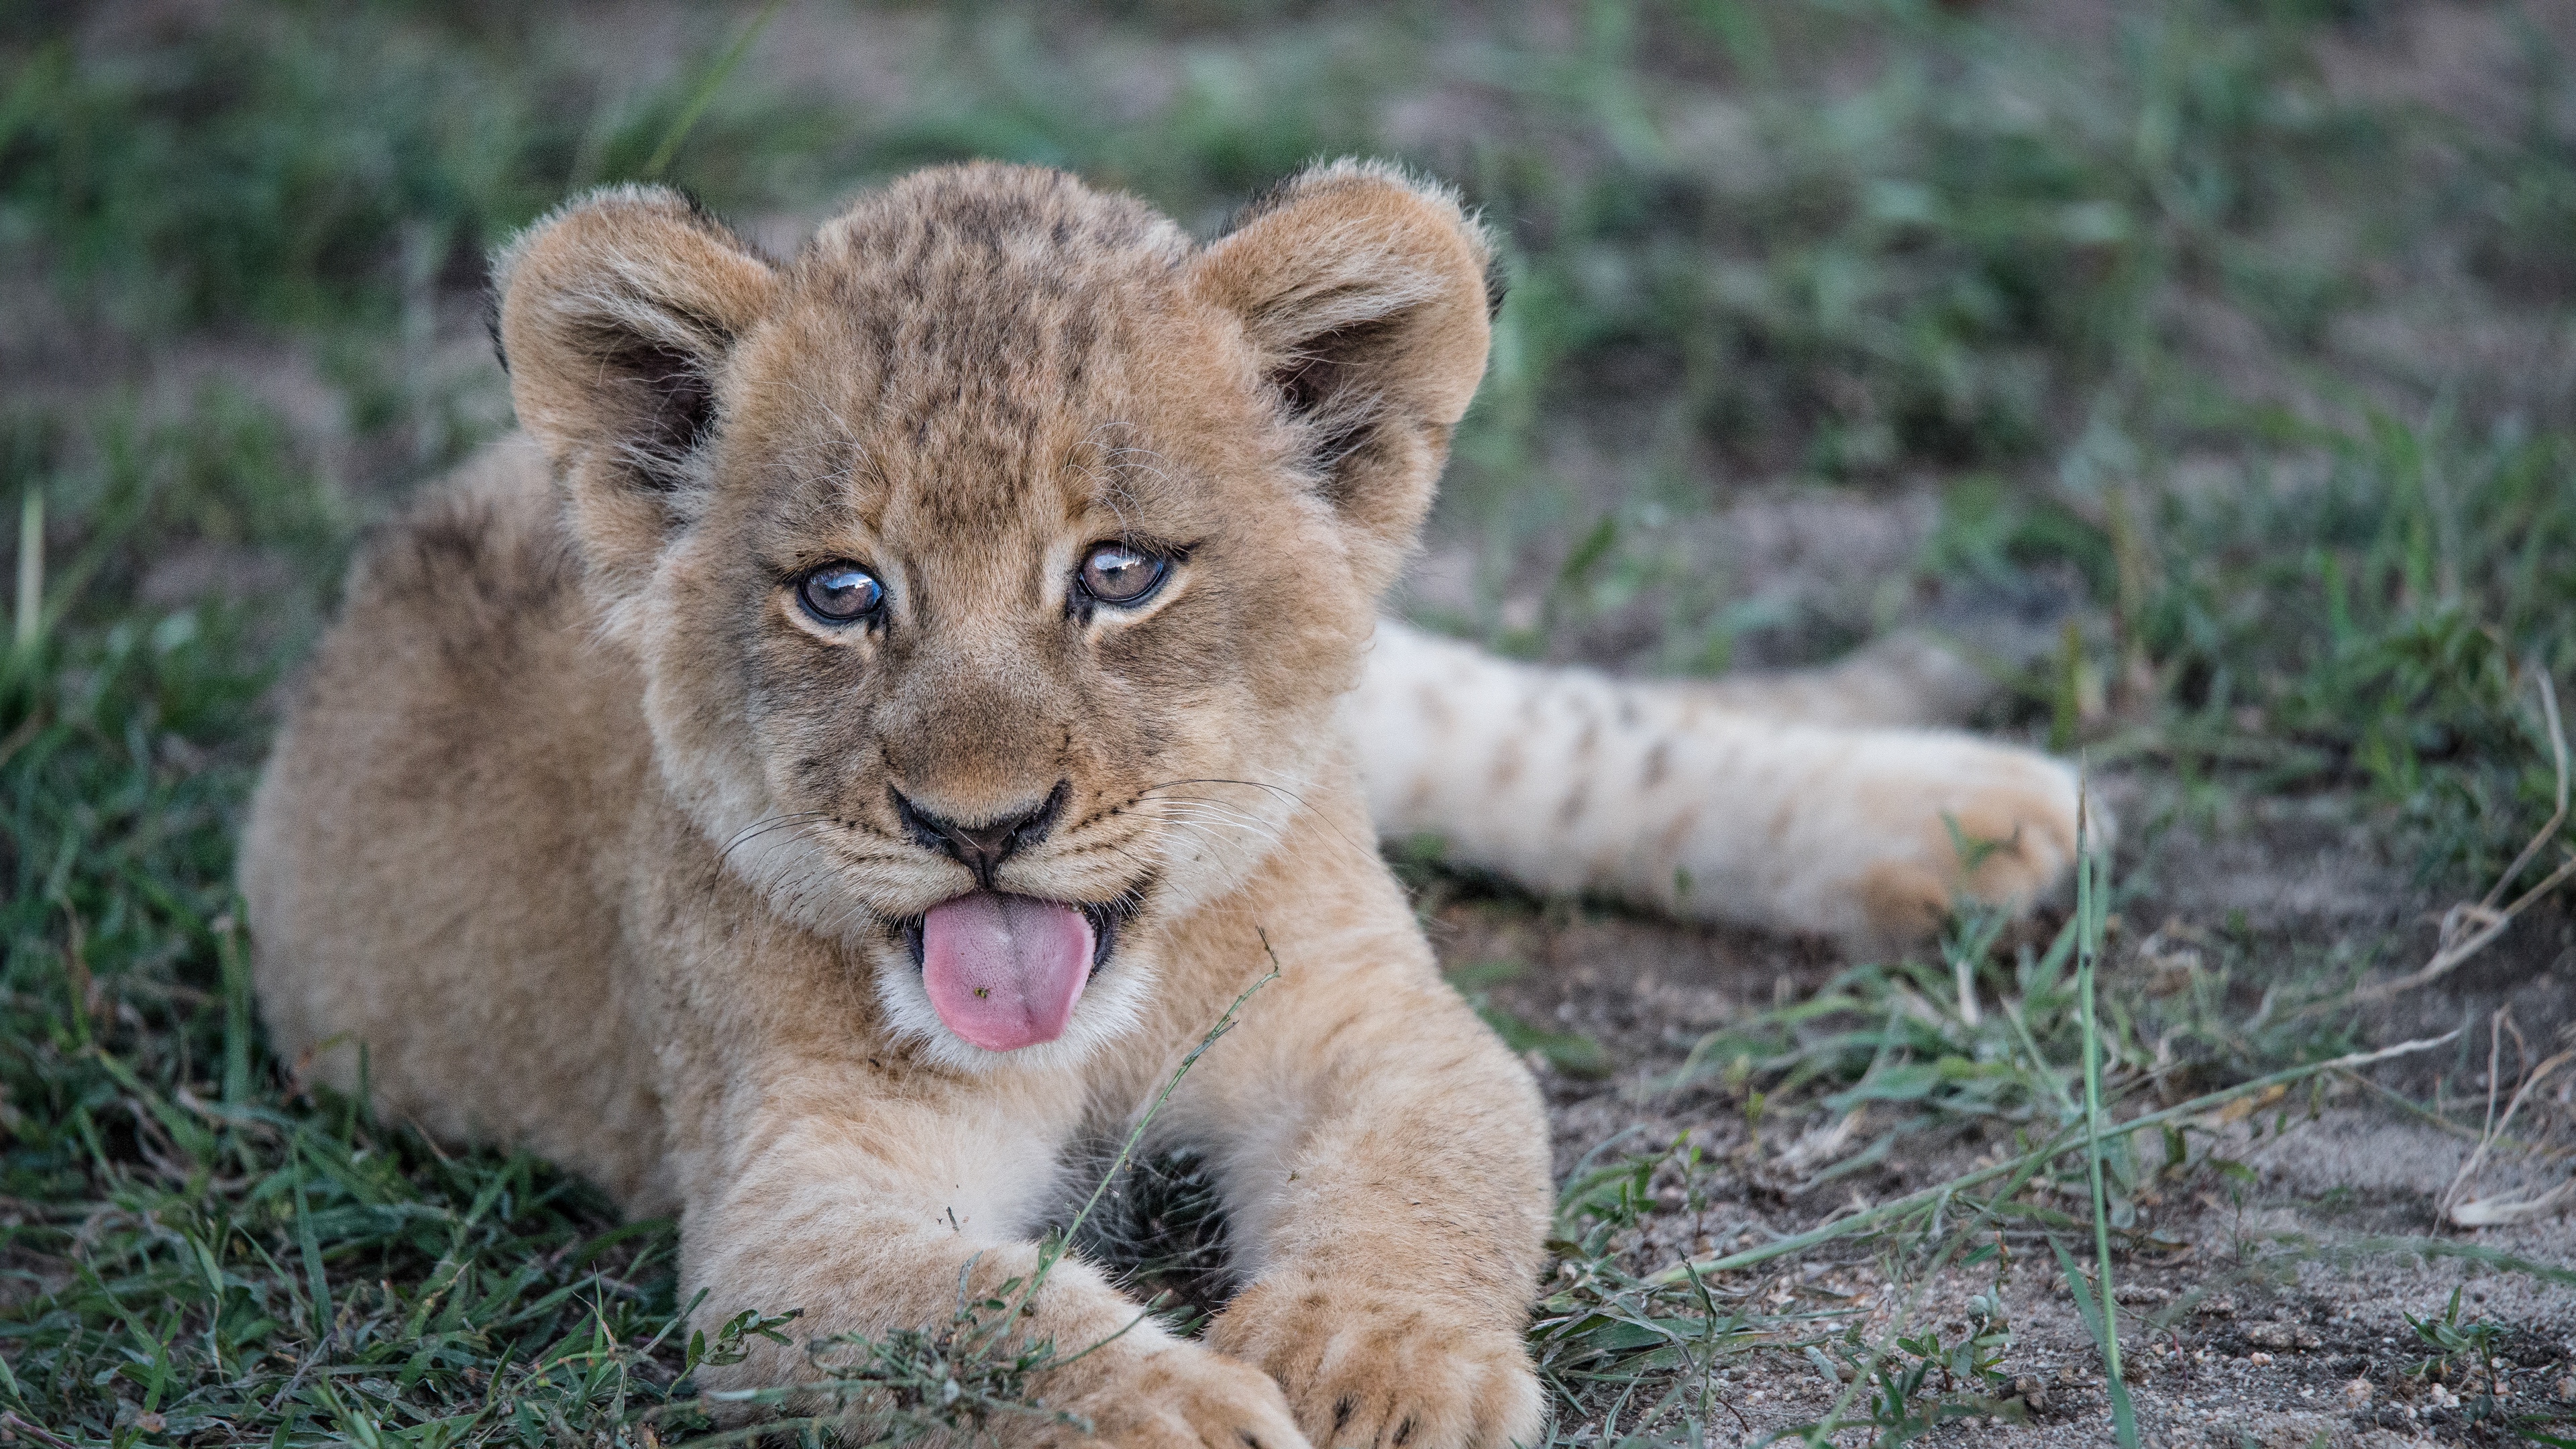 lion cub muzzle protruding tongue 4k 1542241489 - lion cub, muzzle, protruding tongue 4k - protruding tongue, muzzle, lion cub